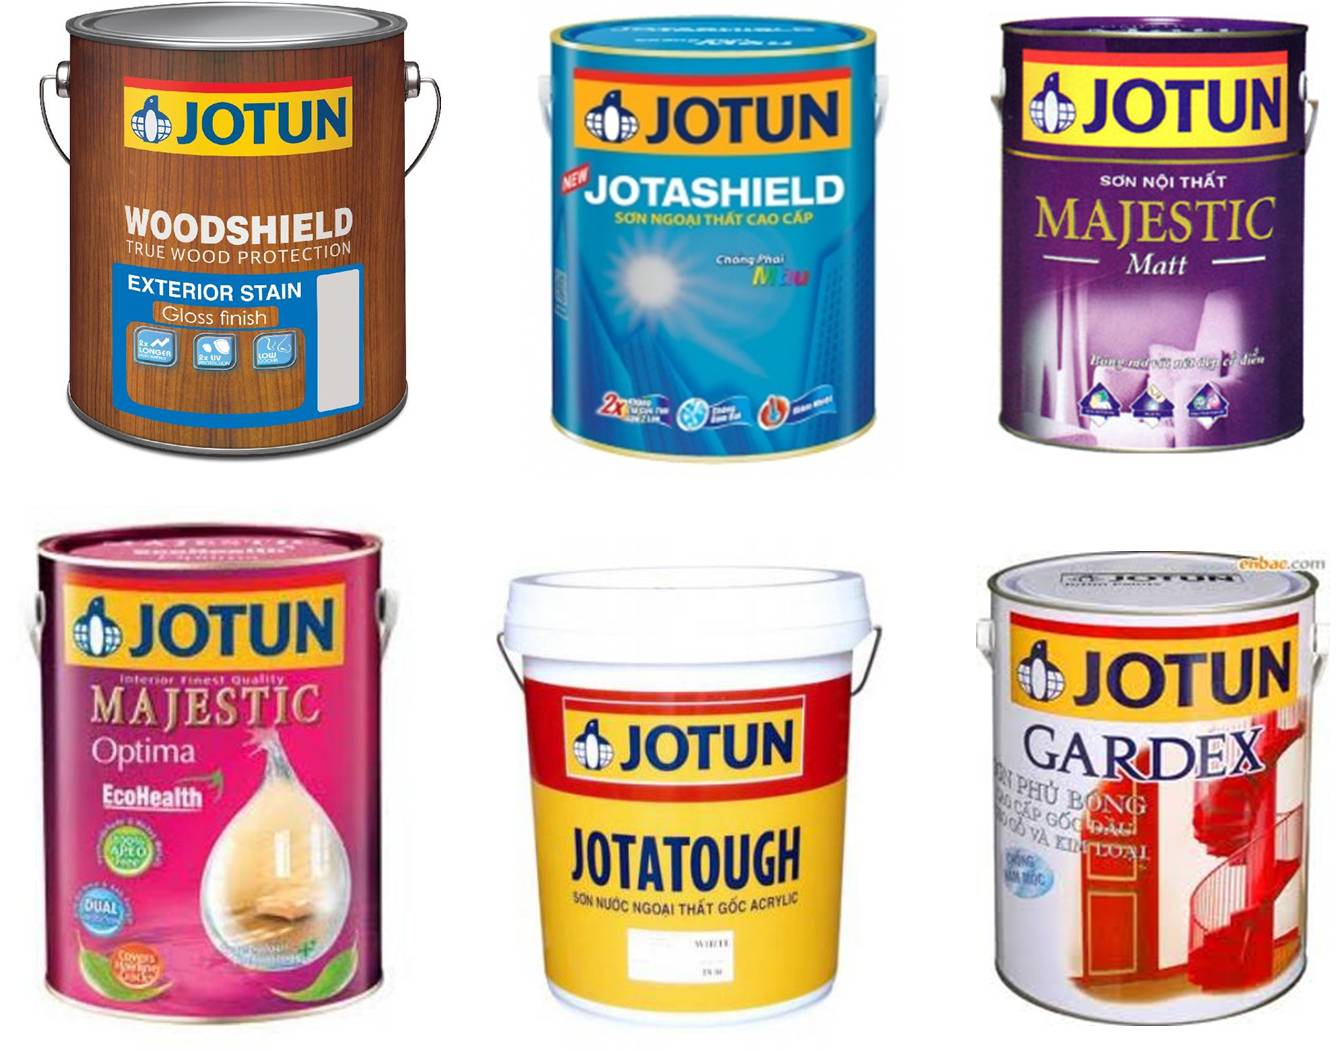 Sơn Jotun là một thương hiệu nổi tiếng với chất lượng vượt trội. Nếu bạn đang tìm kiếm một loại sơn chất lượng cao, sơn Jotun sẽ là lựa chọn hoàn hảo cho bạn.